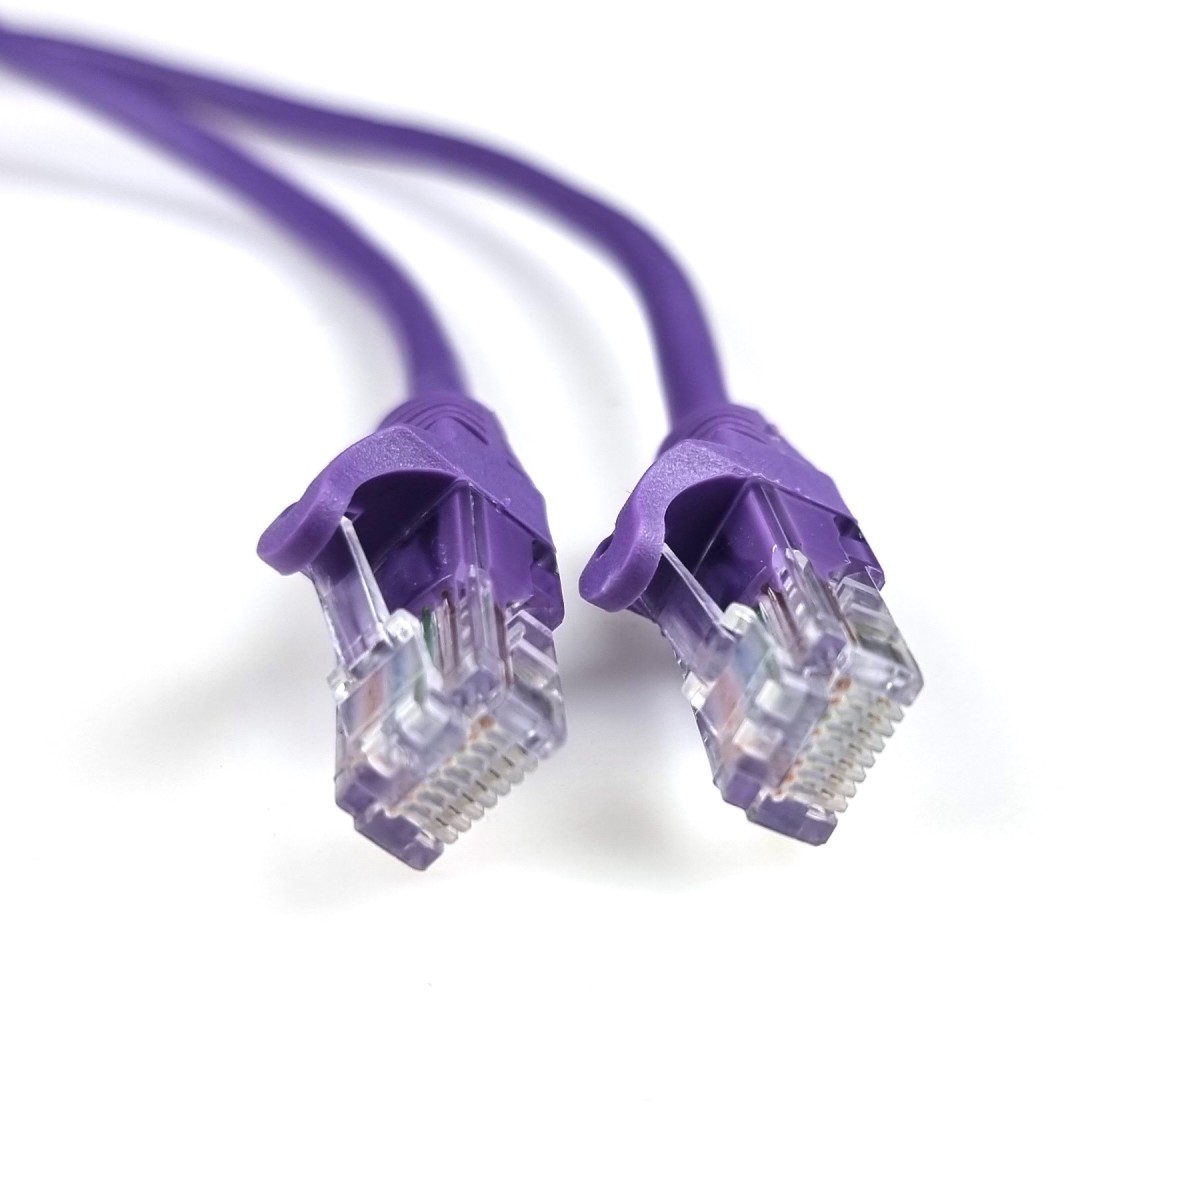 Інтернет кабель UTP CAT5e, фіолетовий, 1м, EServer 98_98.jpg - фото 3